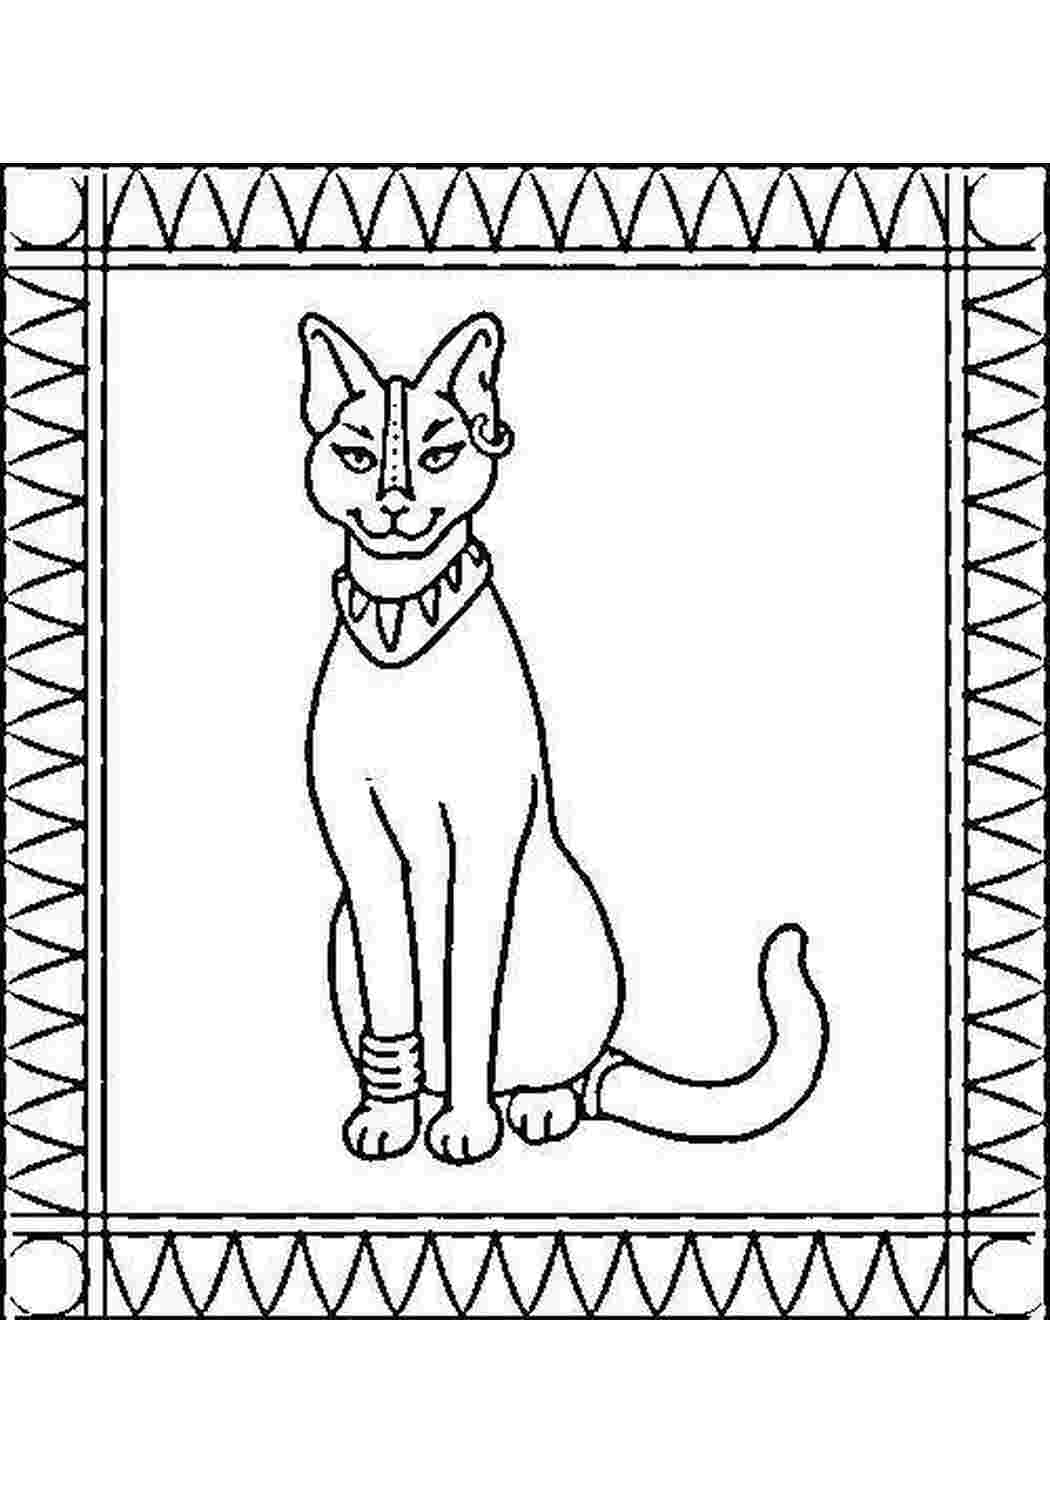 Хэллоуин египетская кошка раскраски для детей с шаблоном